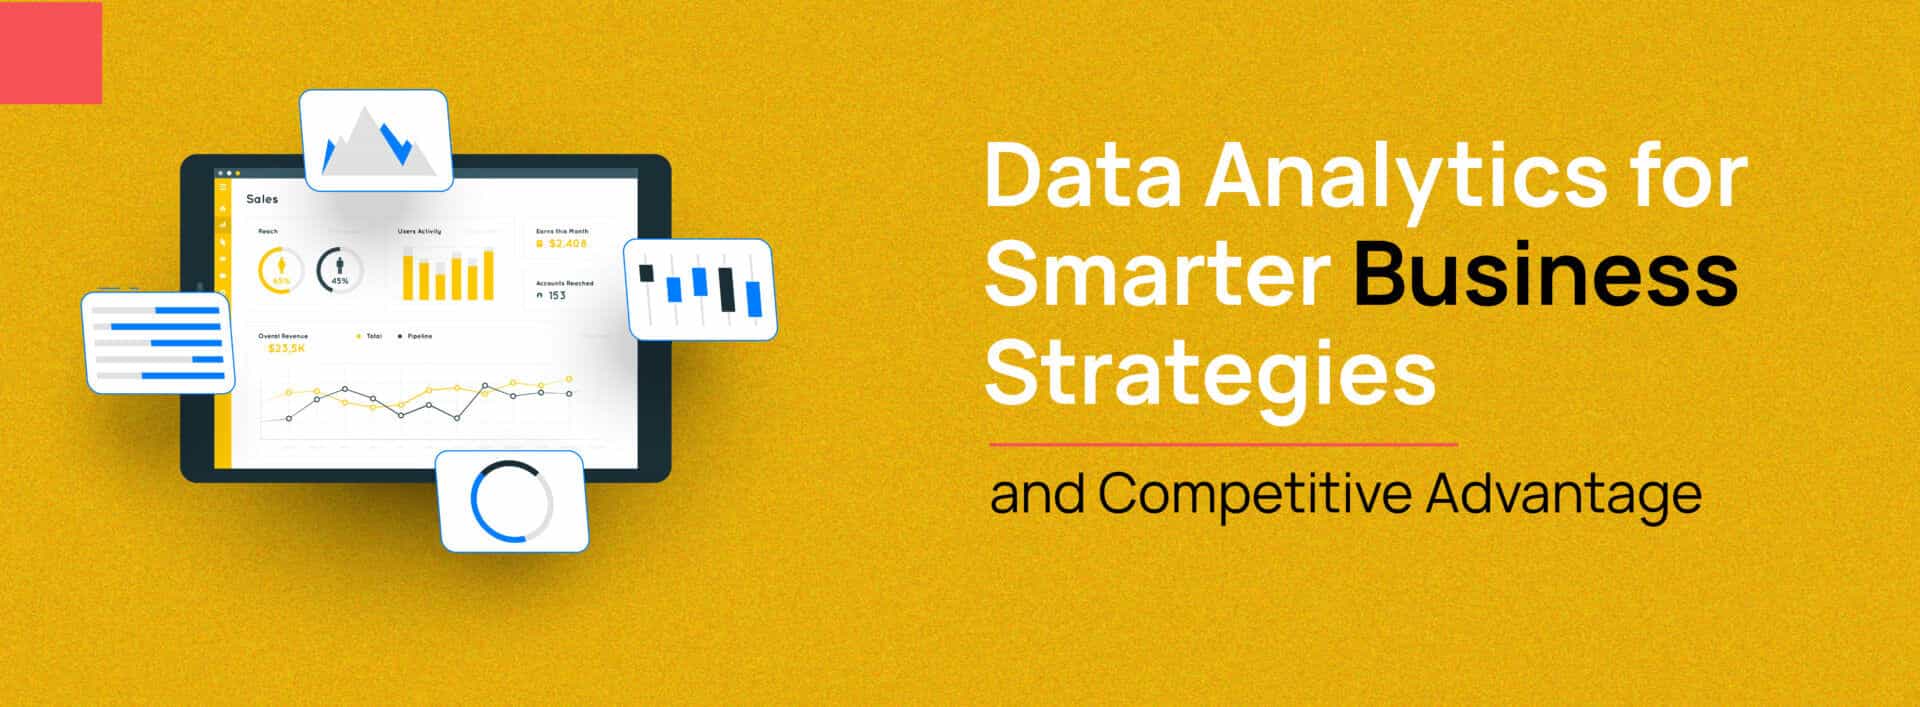 Data Analytics Strategies